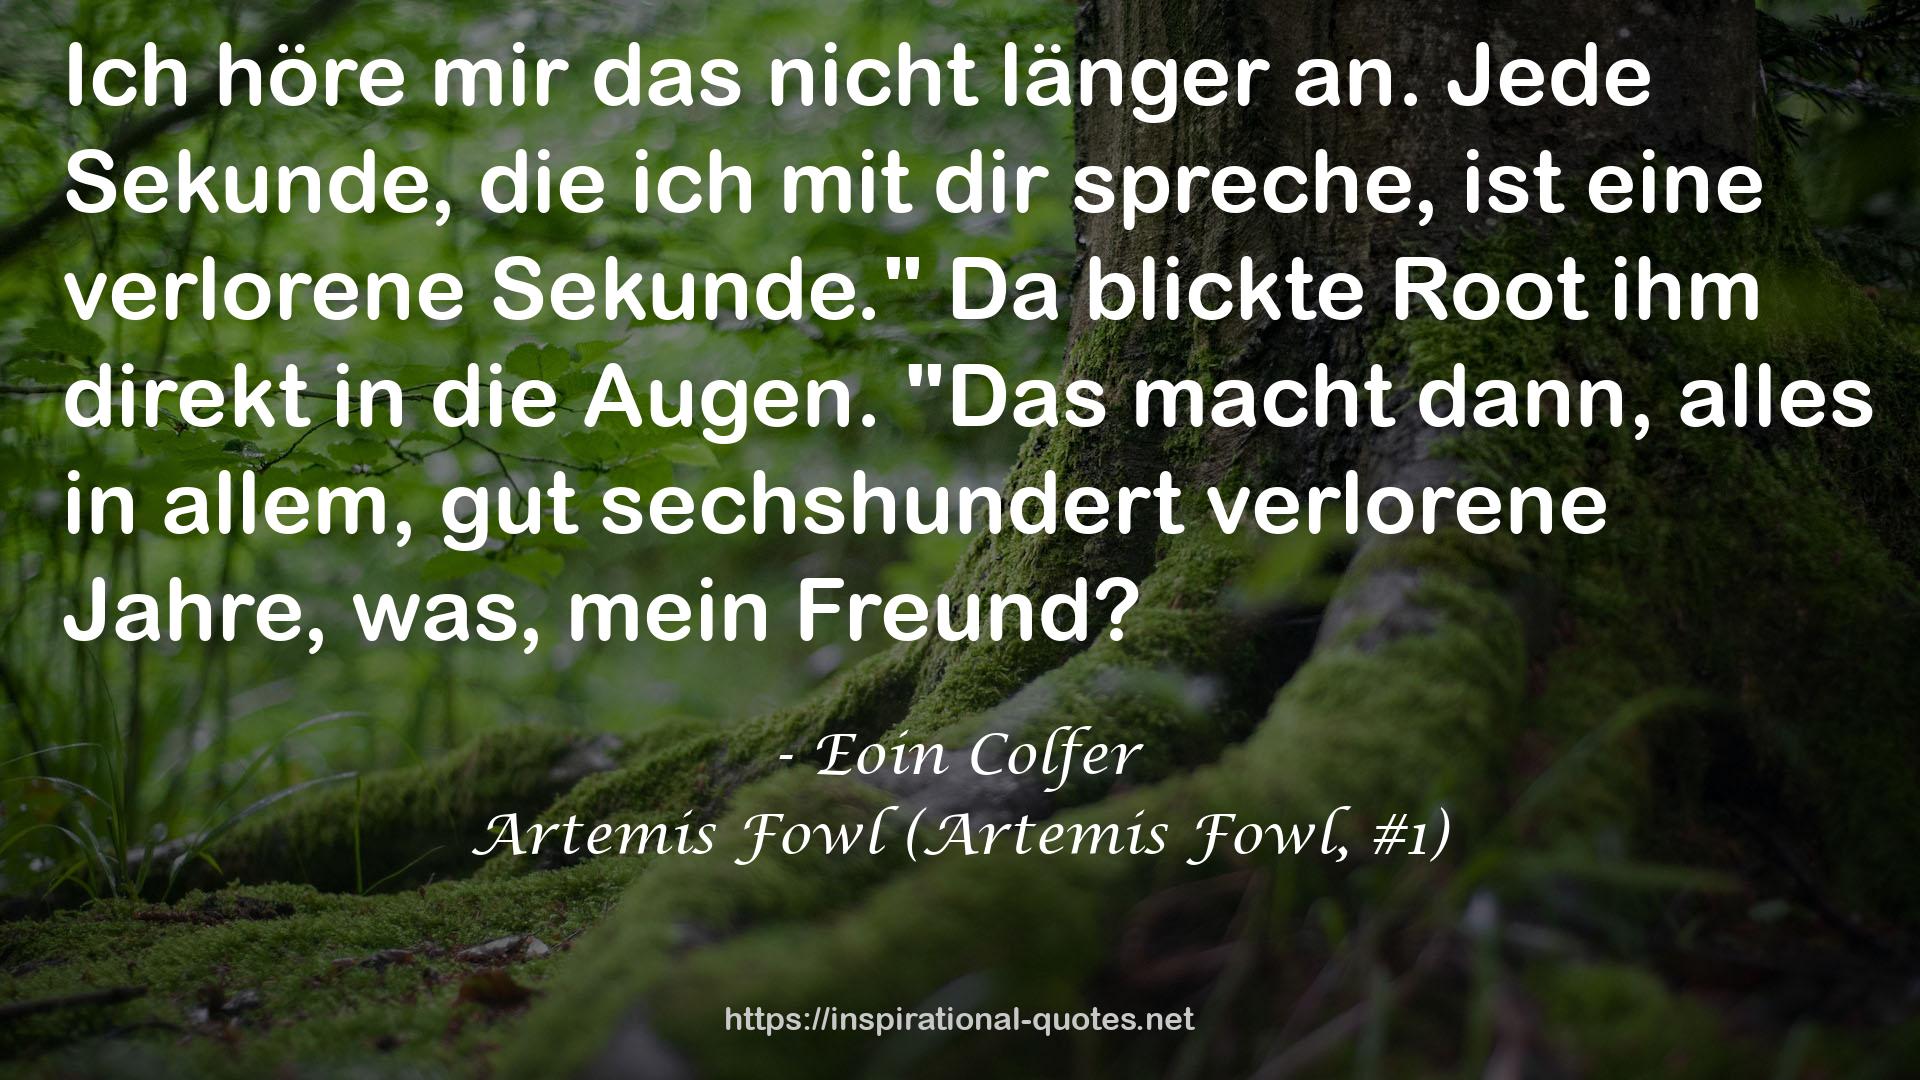 Artemis Fowl (Artemis Fowl, #1) QUOTES